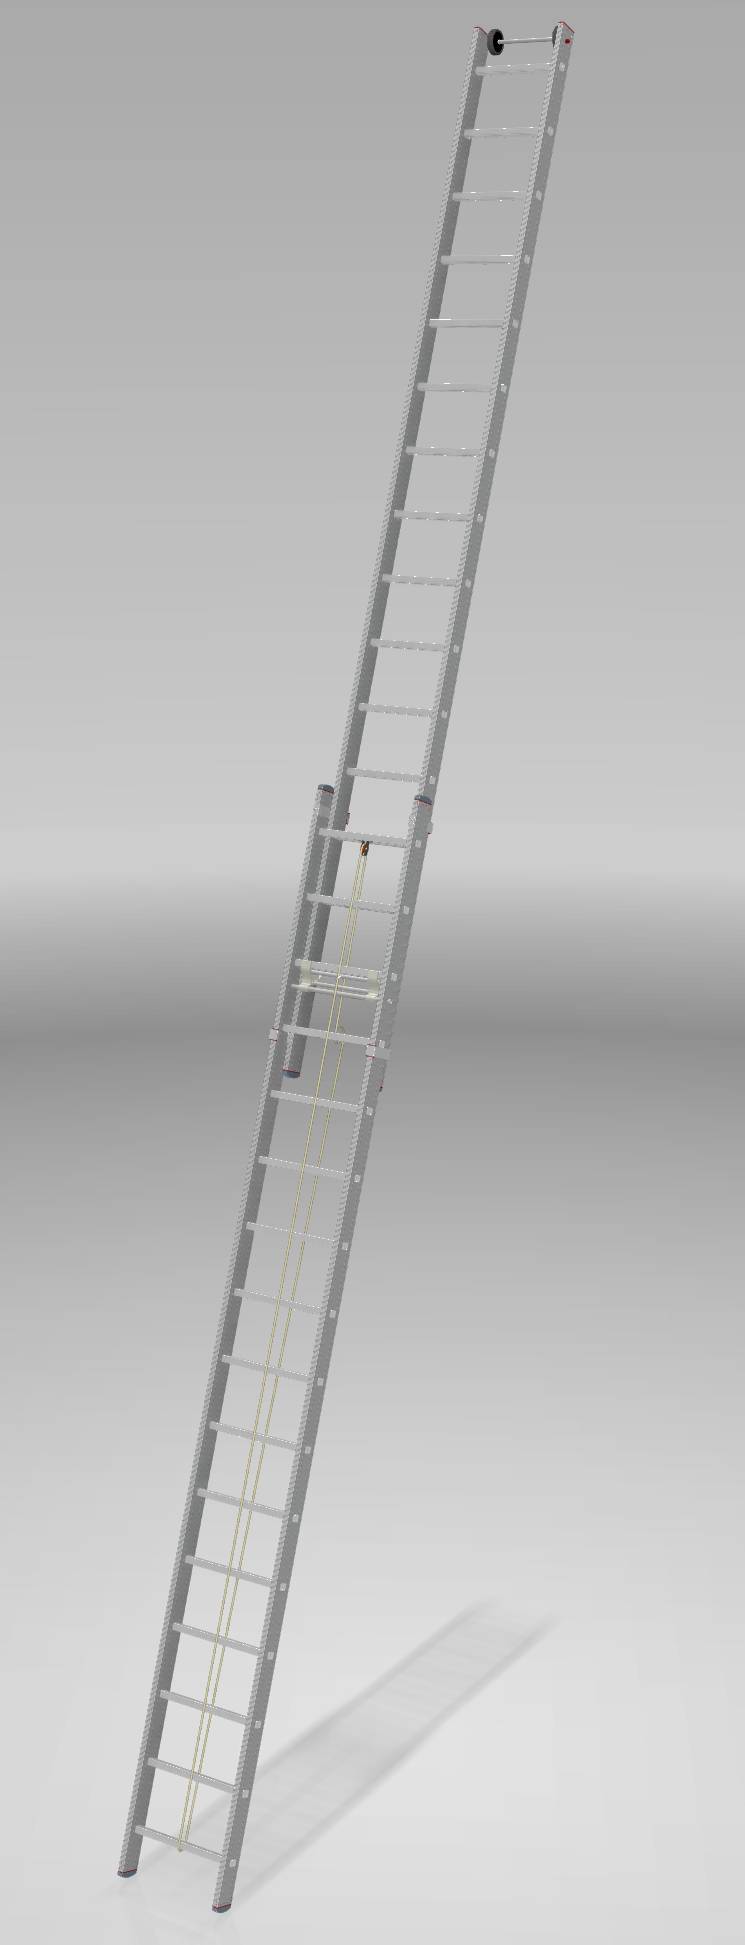 Индустриальная алюминиевая двухсекционная тросовая лестница NV5240 артикул 5240216